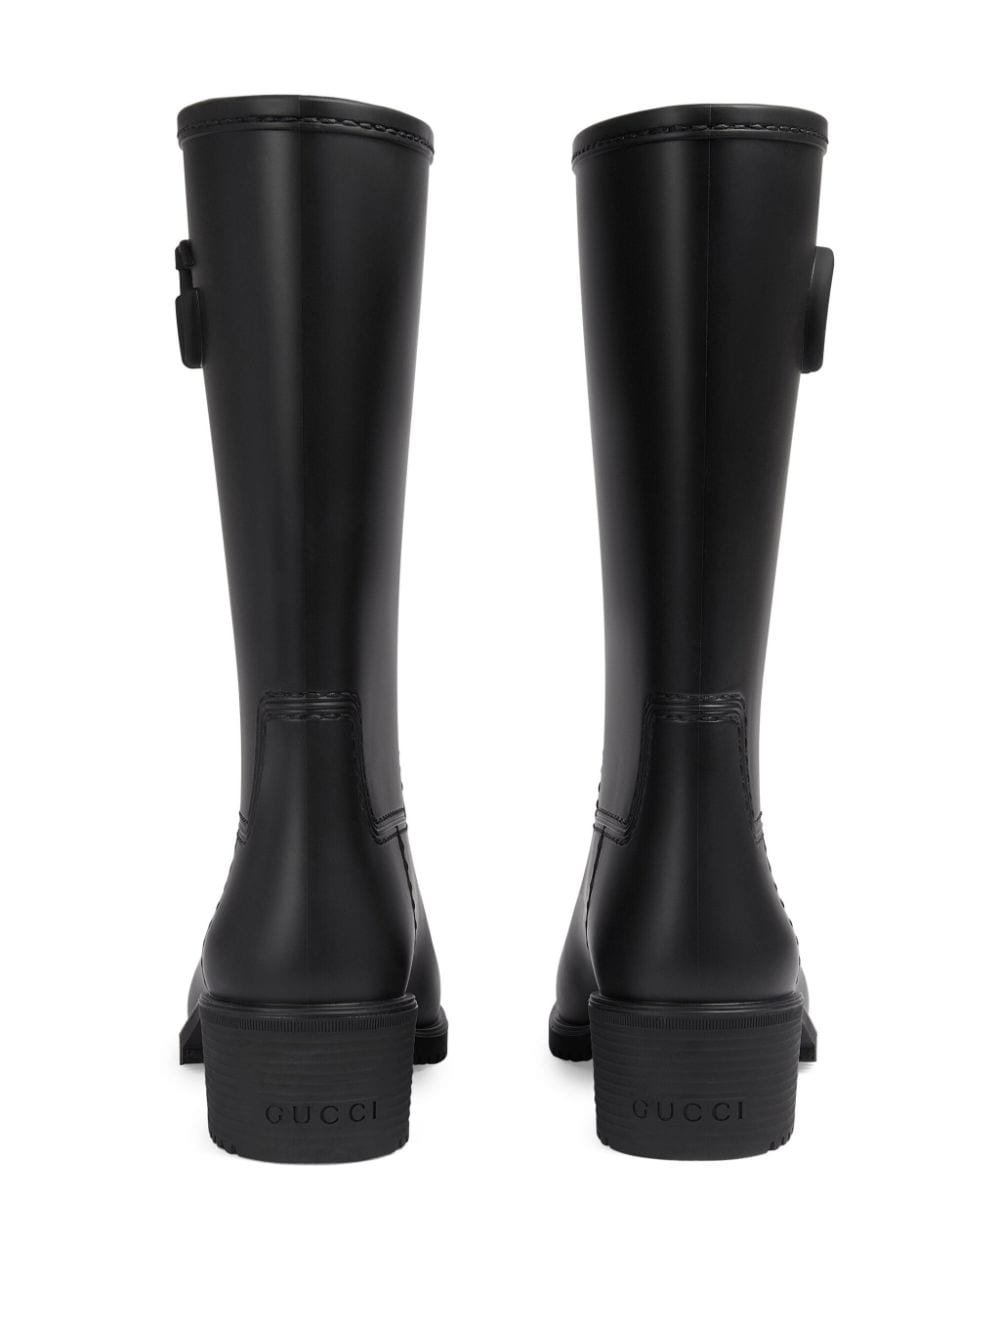 نساء أحذية المطر الجلدية السوداء ذات التصميم ذو الحرفين G المزدوجة